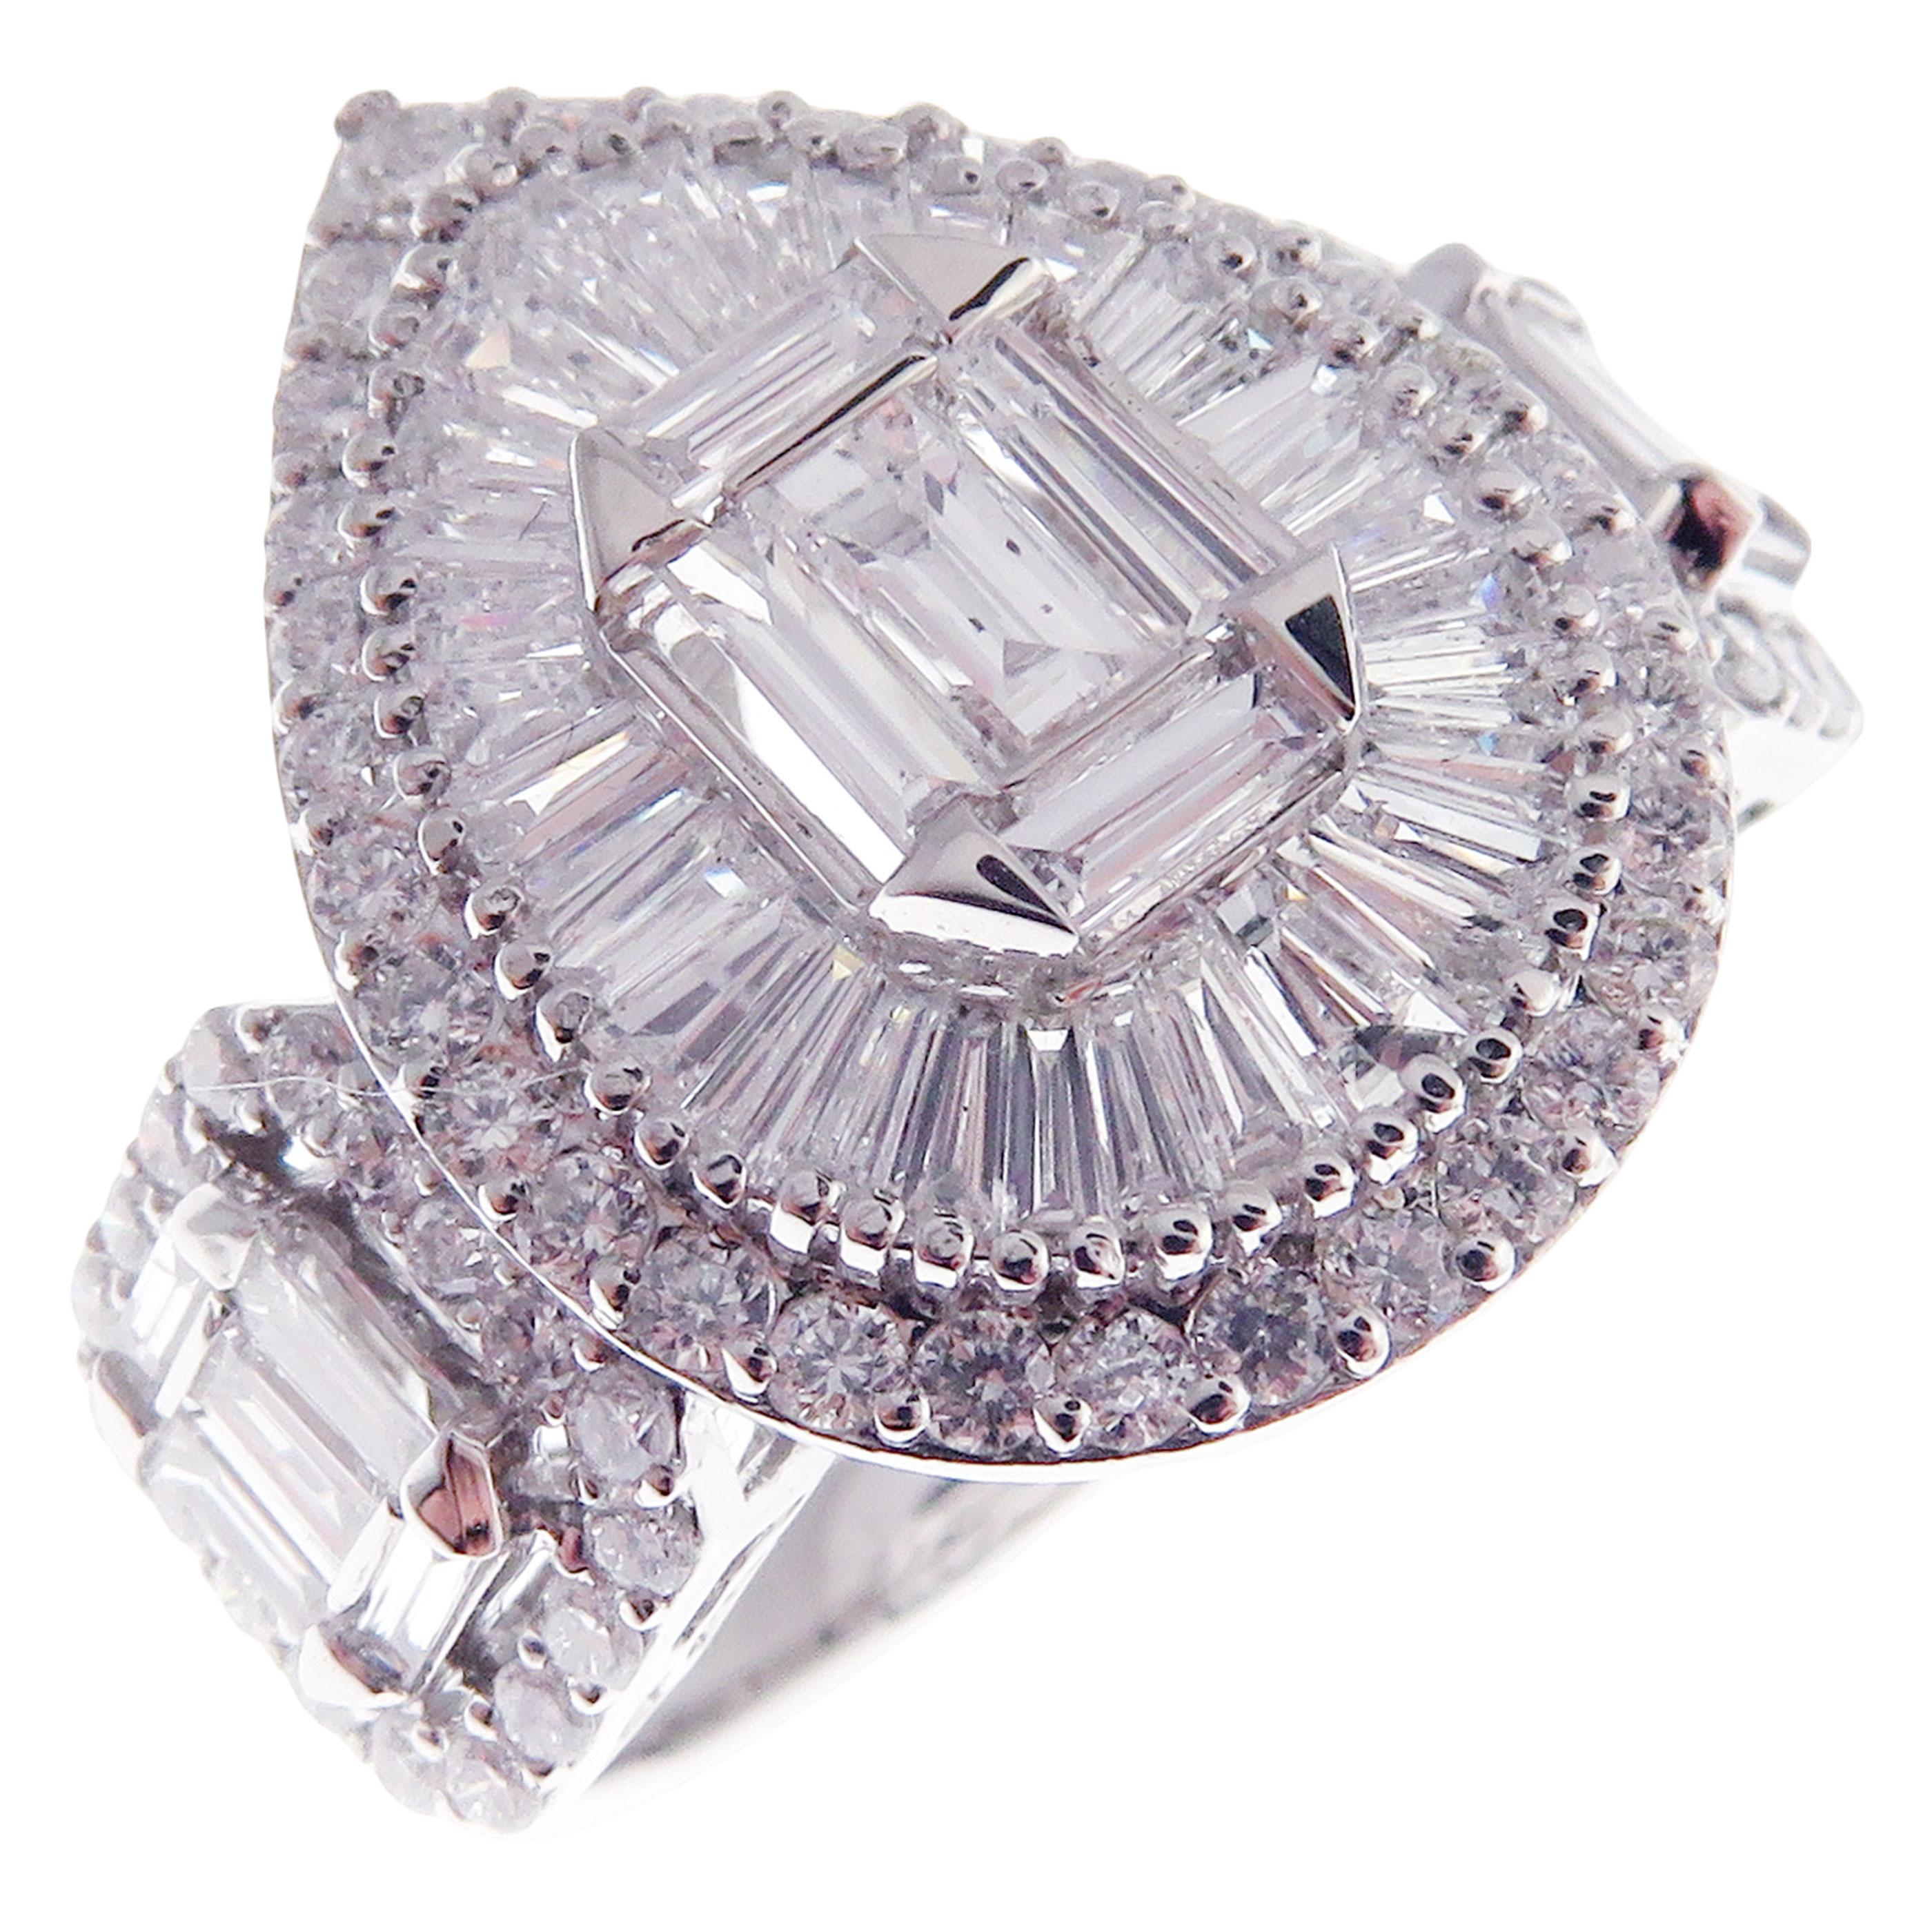 Dieser dreisteinige Ring in Birnenform ist aus 18 Karat Weißgold gefertigt und mit 67 runden weißen Diamanten von insgesamt 0,80 Karat und 43 weißen Baguette-Diamanten von insgesamt 1,55 Karat besetzt.
Ungefähres Gesamtgewicht 5,80 Gramm.
Standard